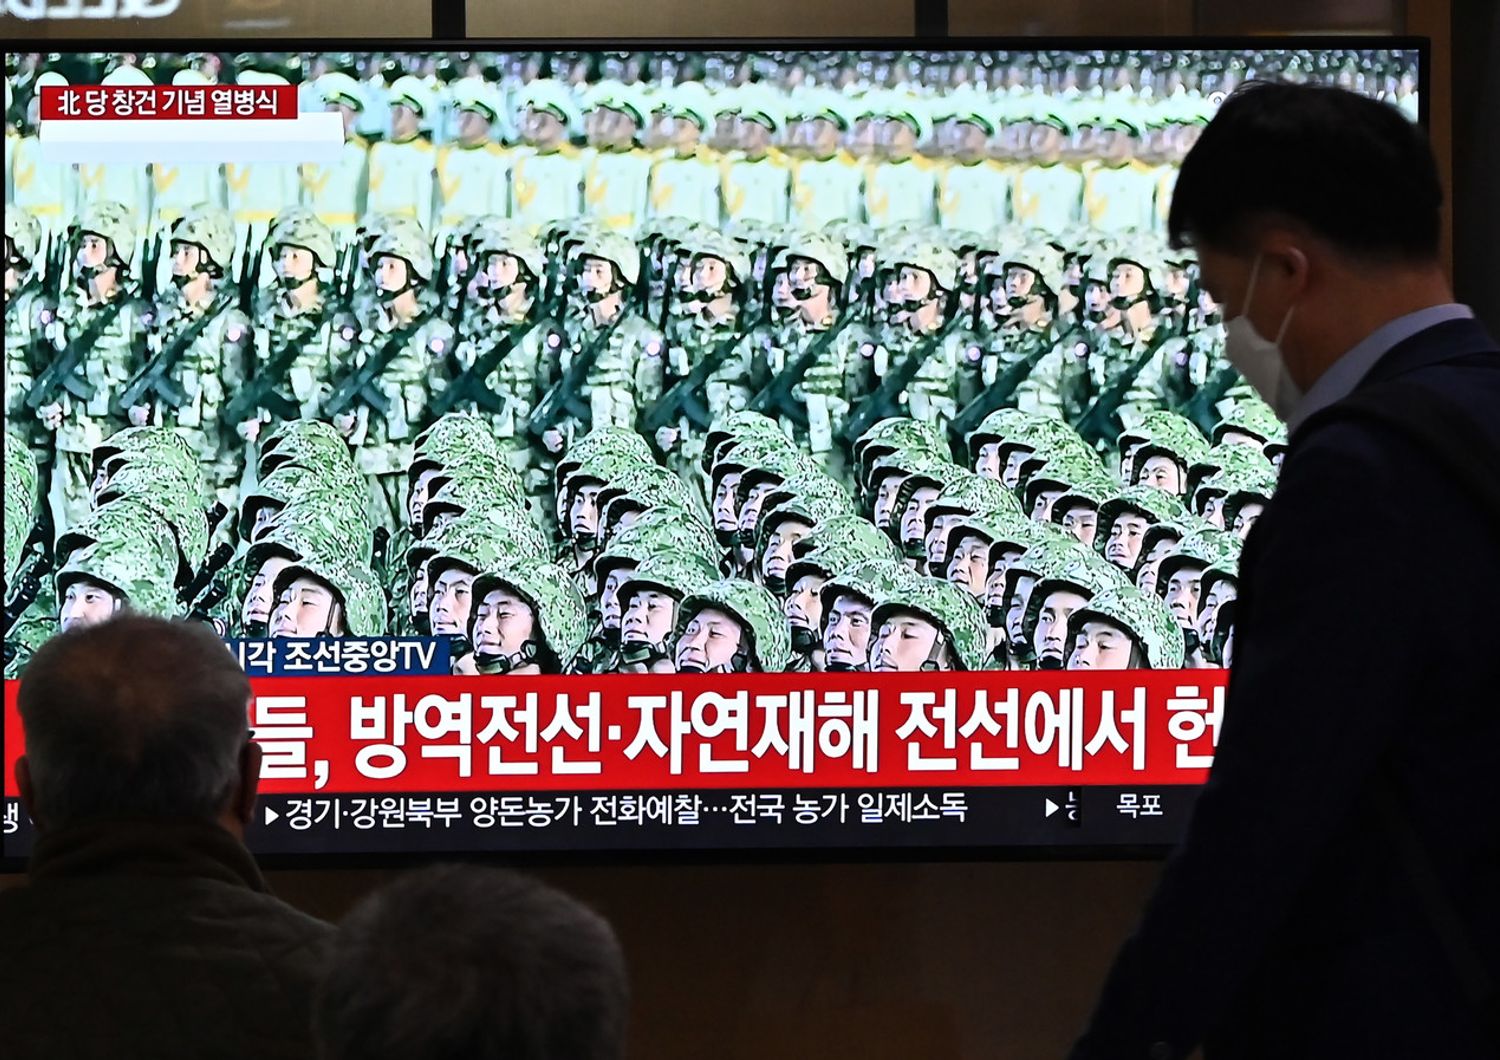 &nbsp;Le immagini della parata militare di Pyong Yang trasmesse alla stazione ferroviaria di Seul